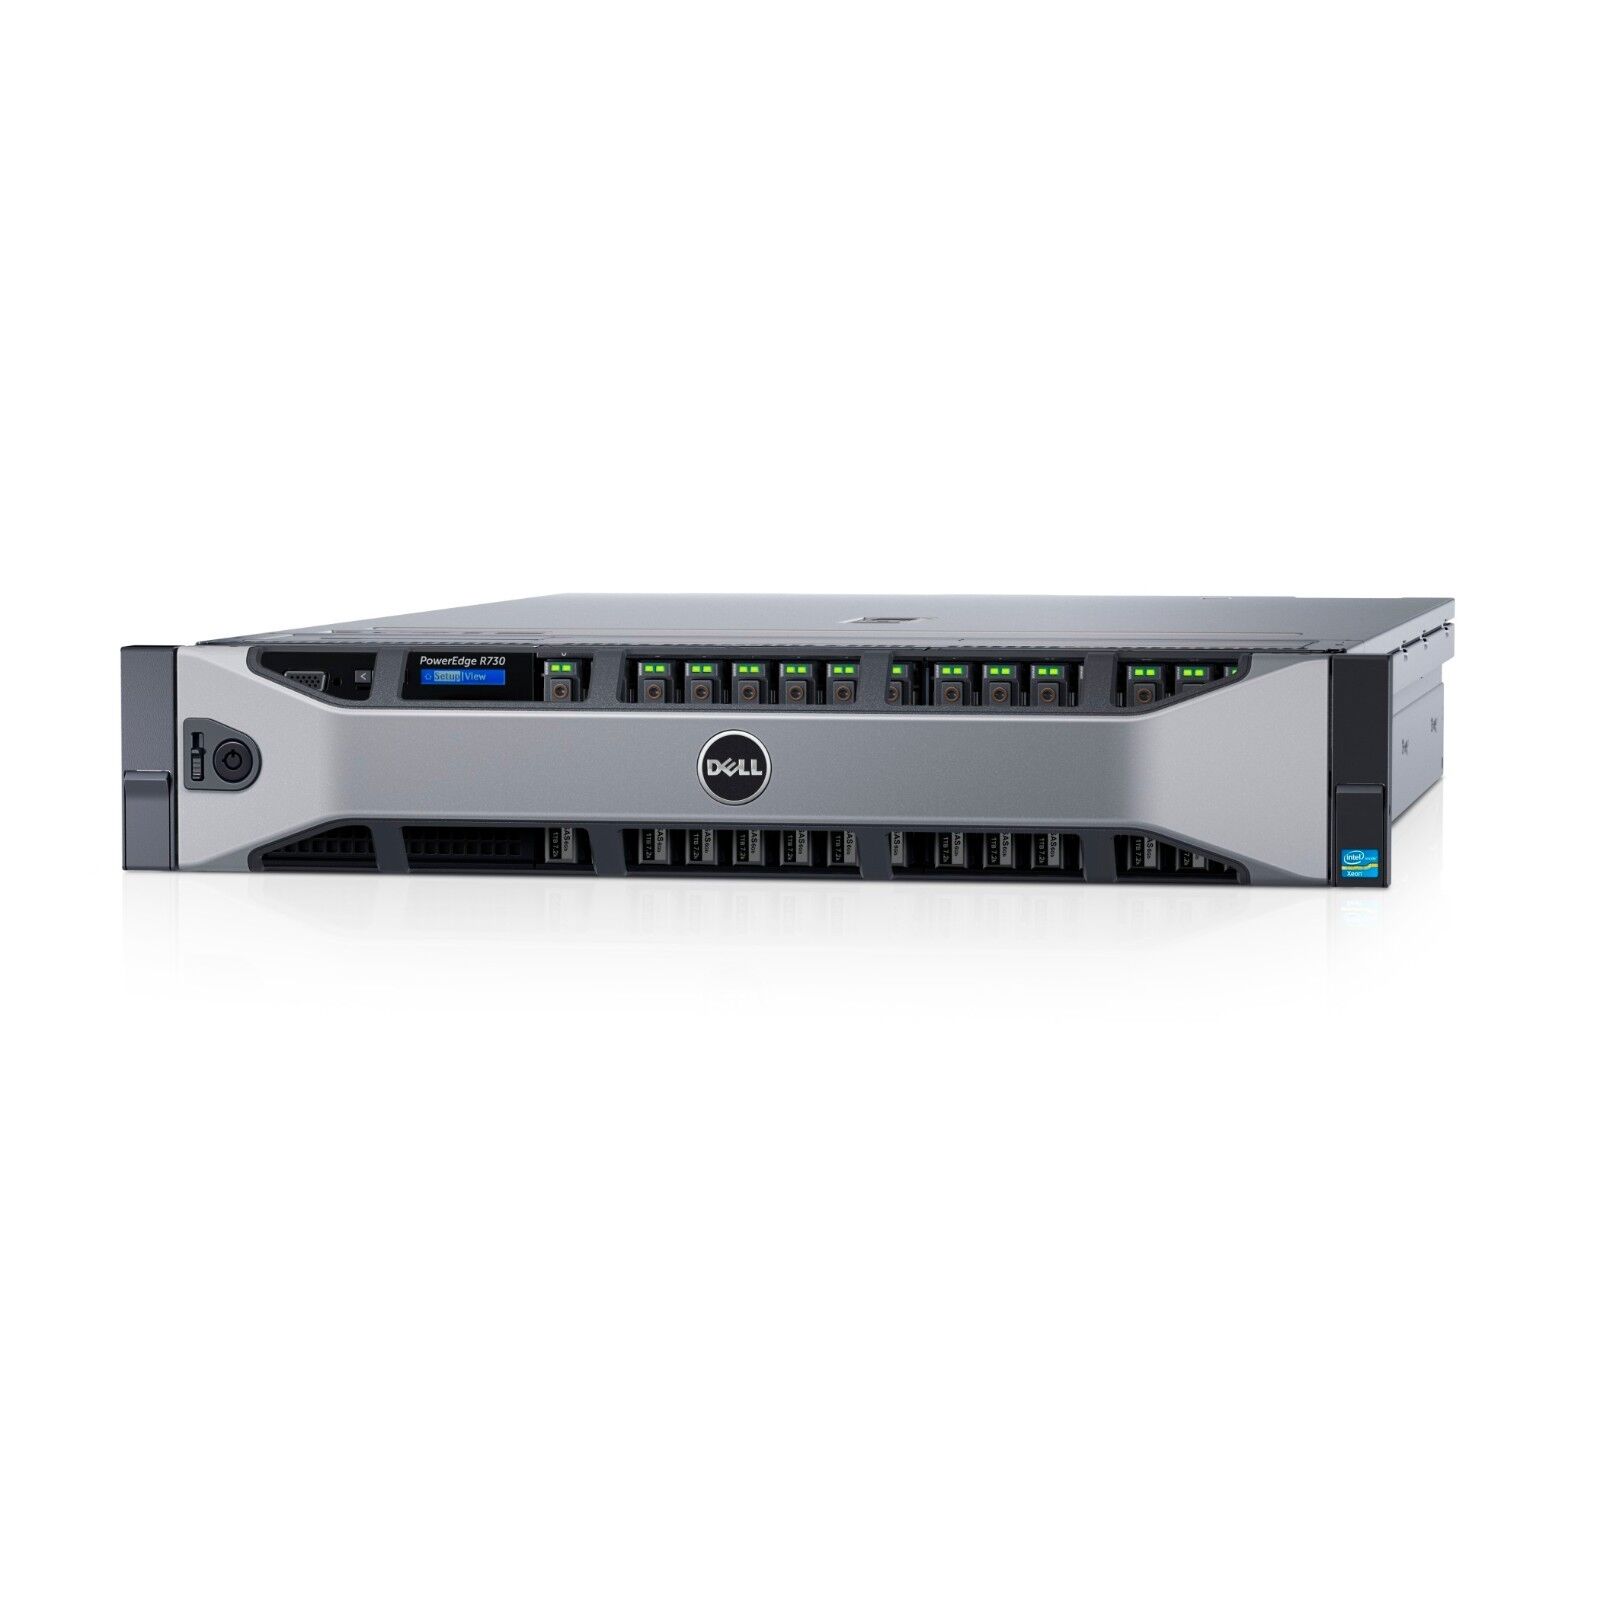 NEW Dell PowerEdge R730 2x 14C E5-2680v4 2.4GHz 256GB Ram 2U Rack Server